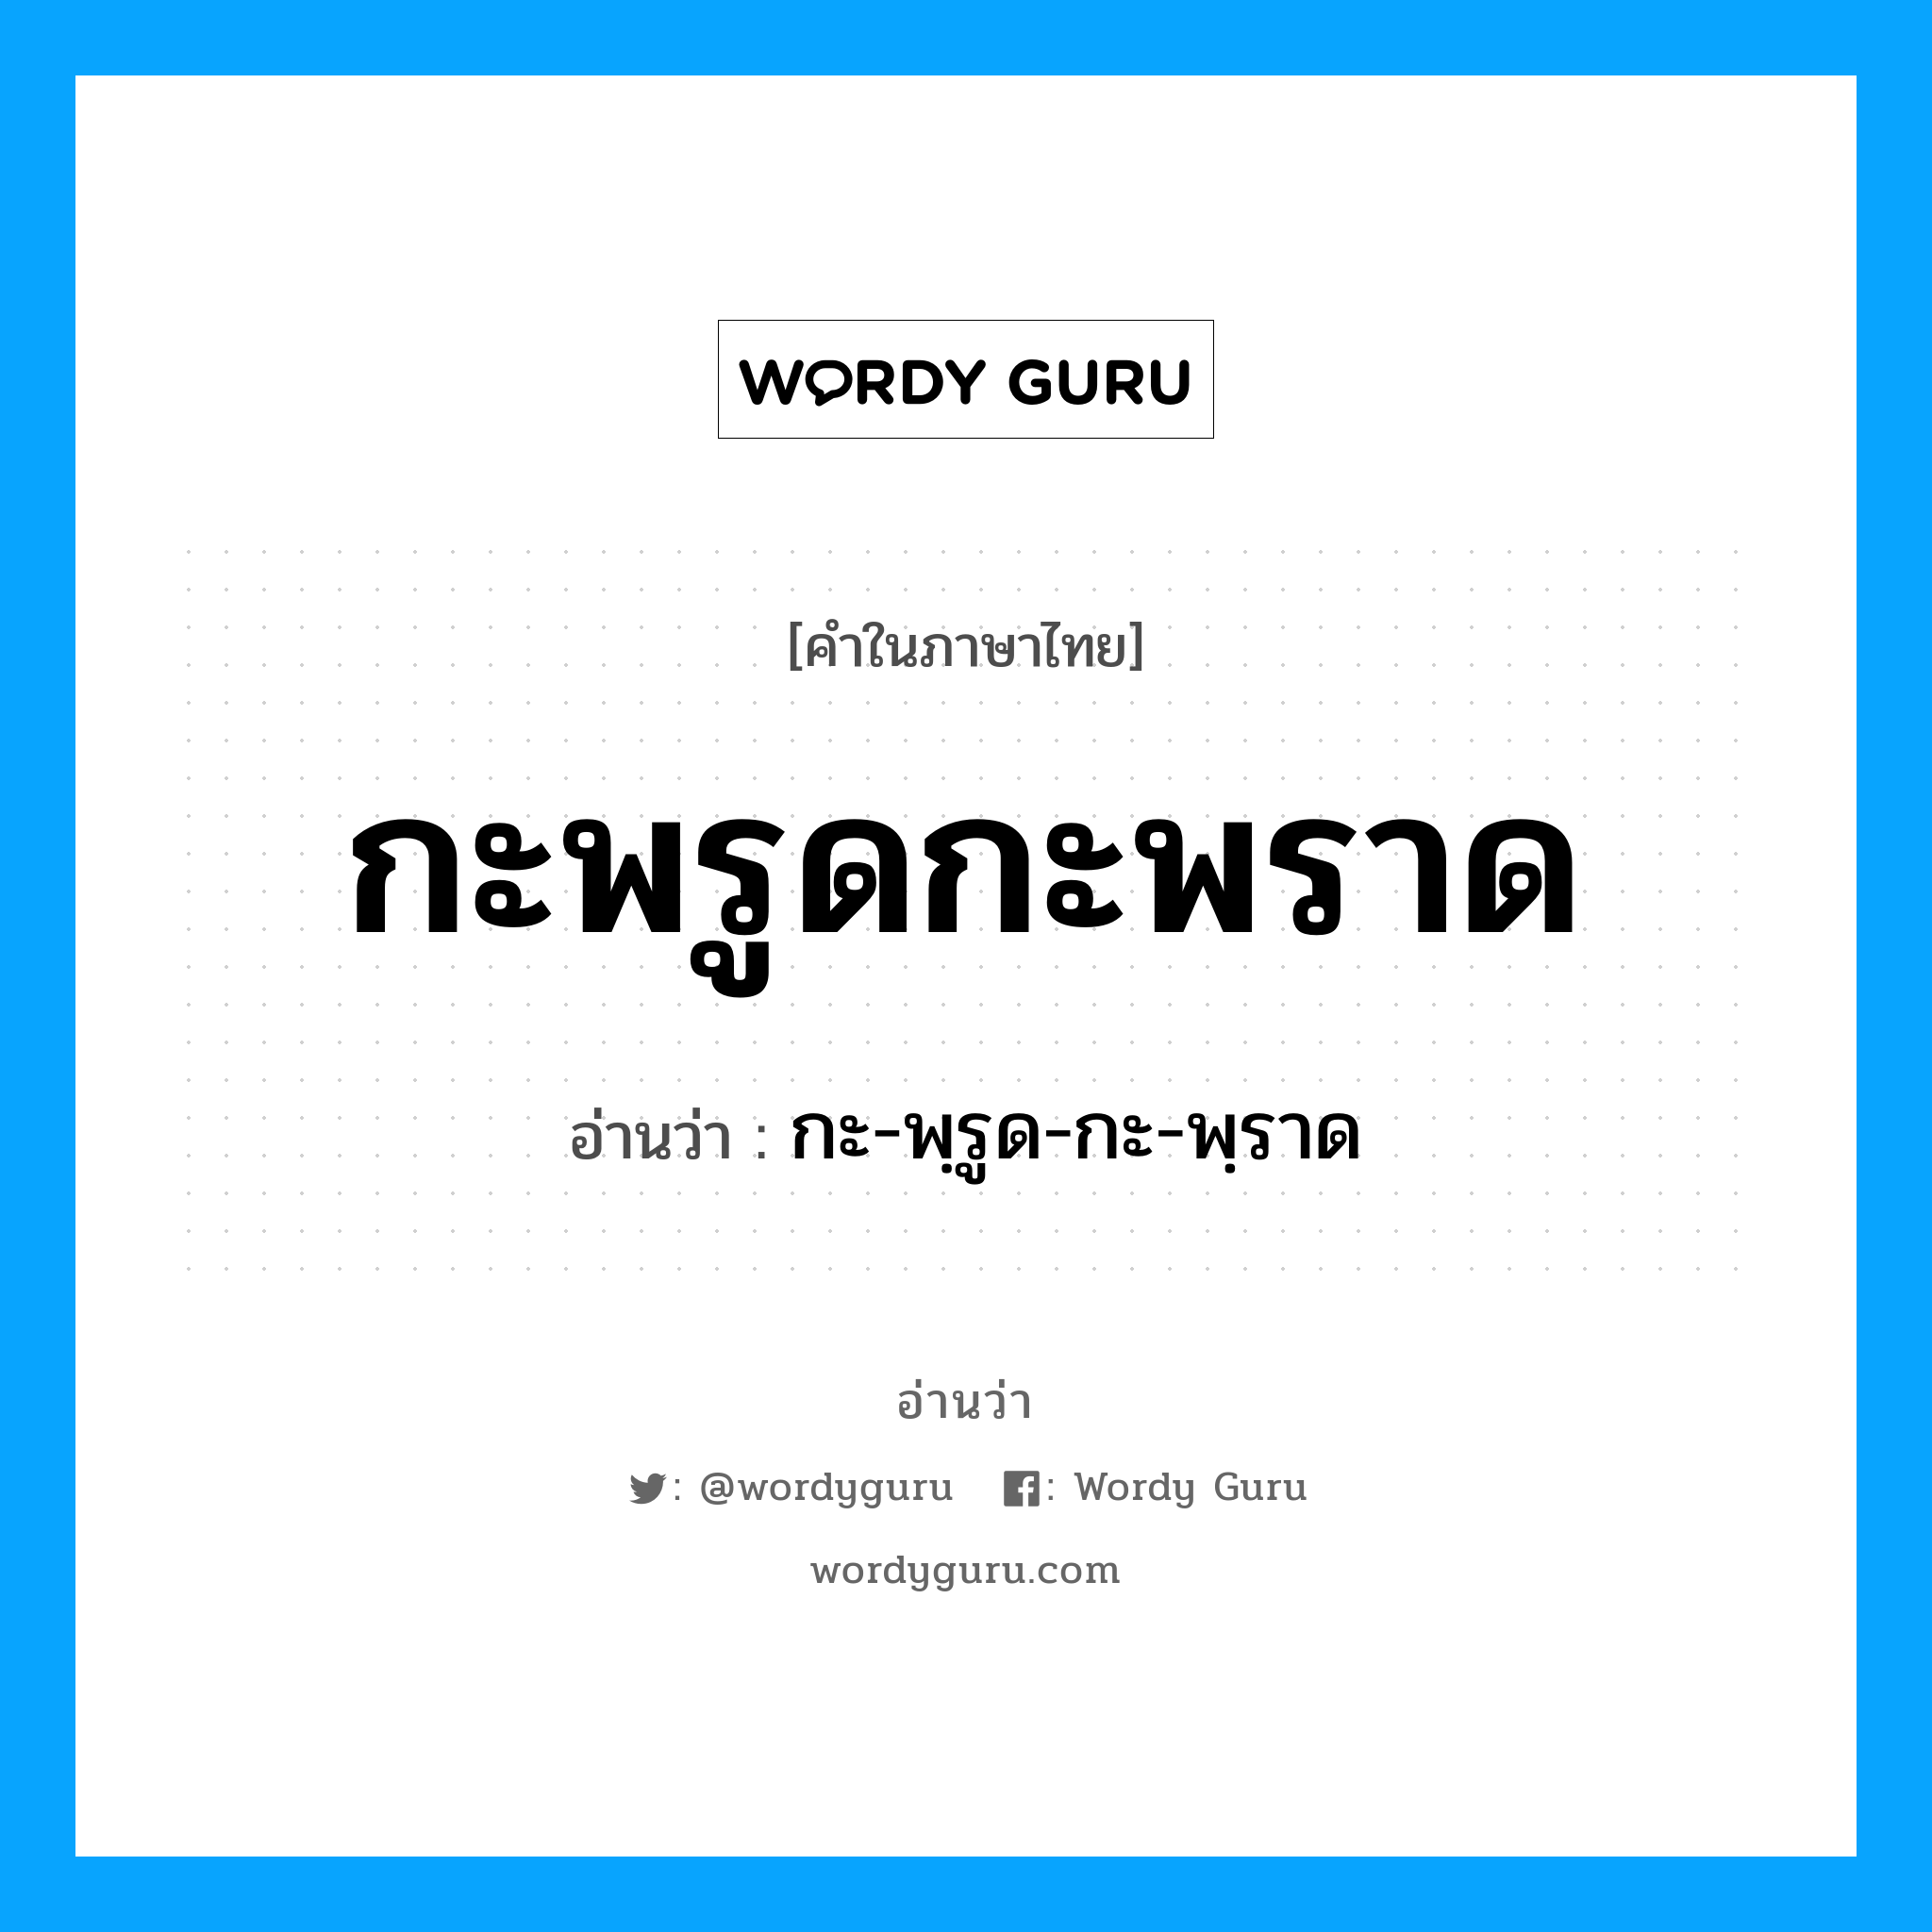 กะ-พฺรูด-กะ-พฺราด เป็นคำอ่านของคำไหน?, คำในภาษาไทย กะ-พฺรูด-กะ-พฺราด อ่านว่า กะพรูดกะพราด